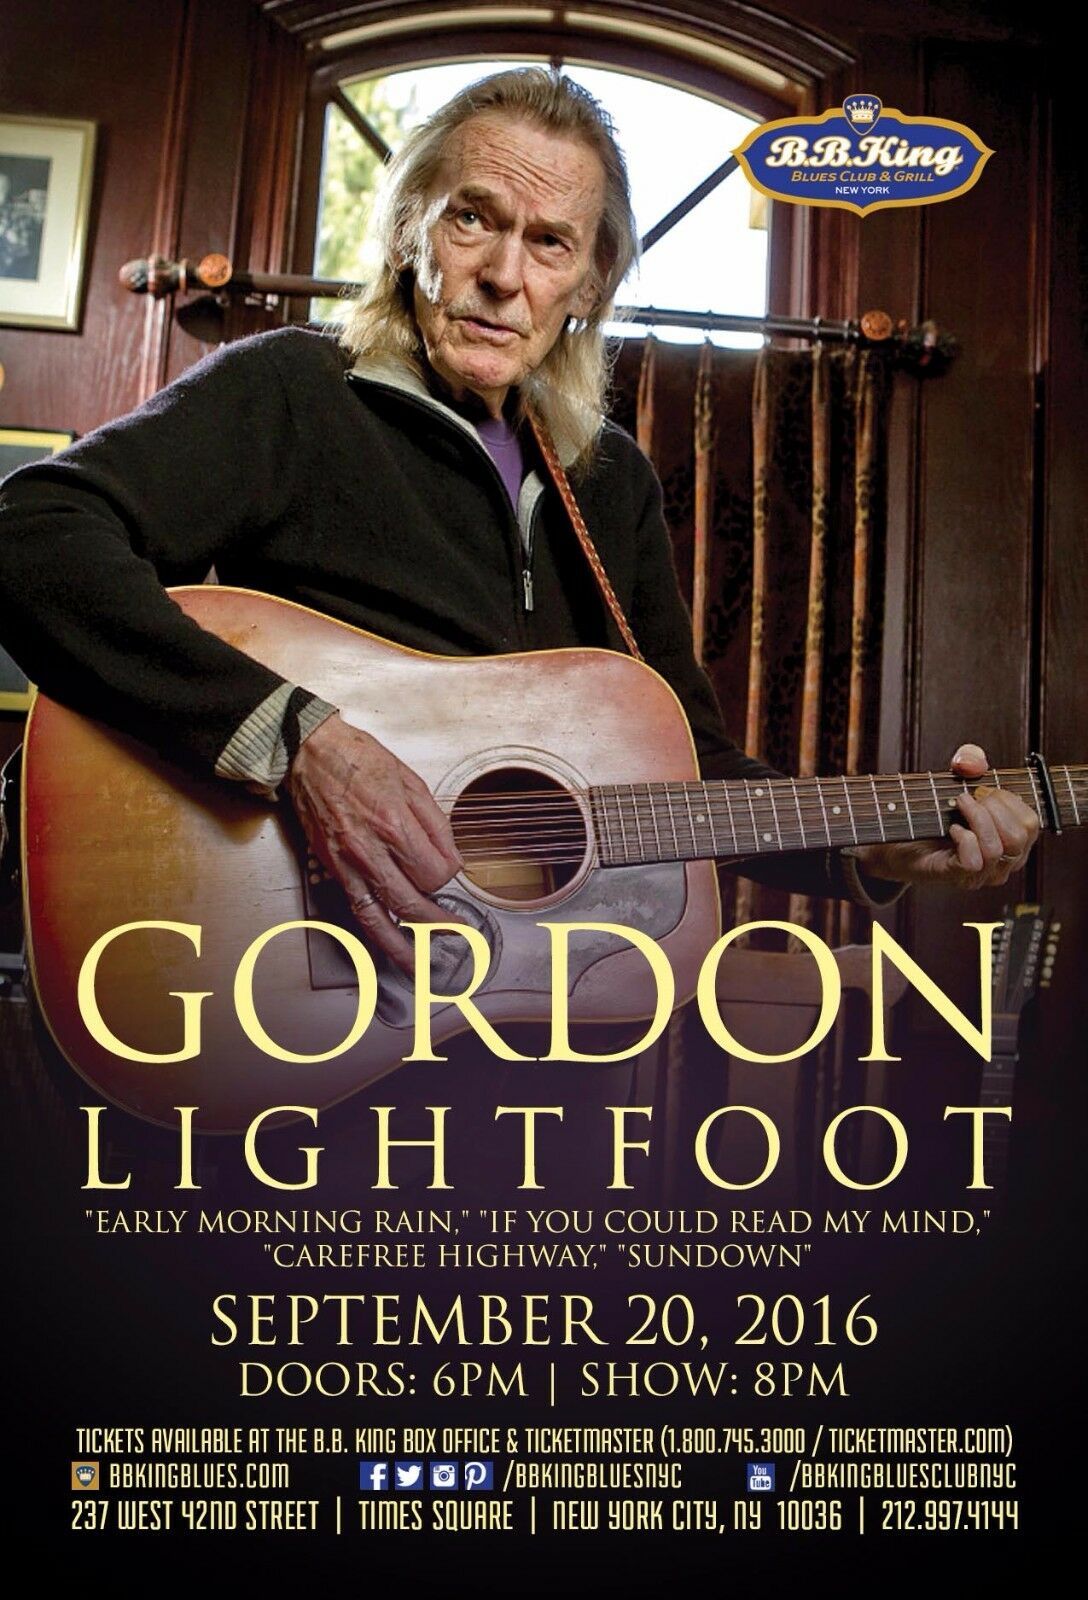 Gordon Lightfoot 2016 New York City Concert Tour Poster - Folk Pop / Rock Music